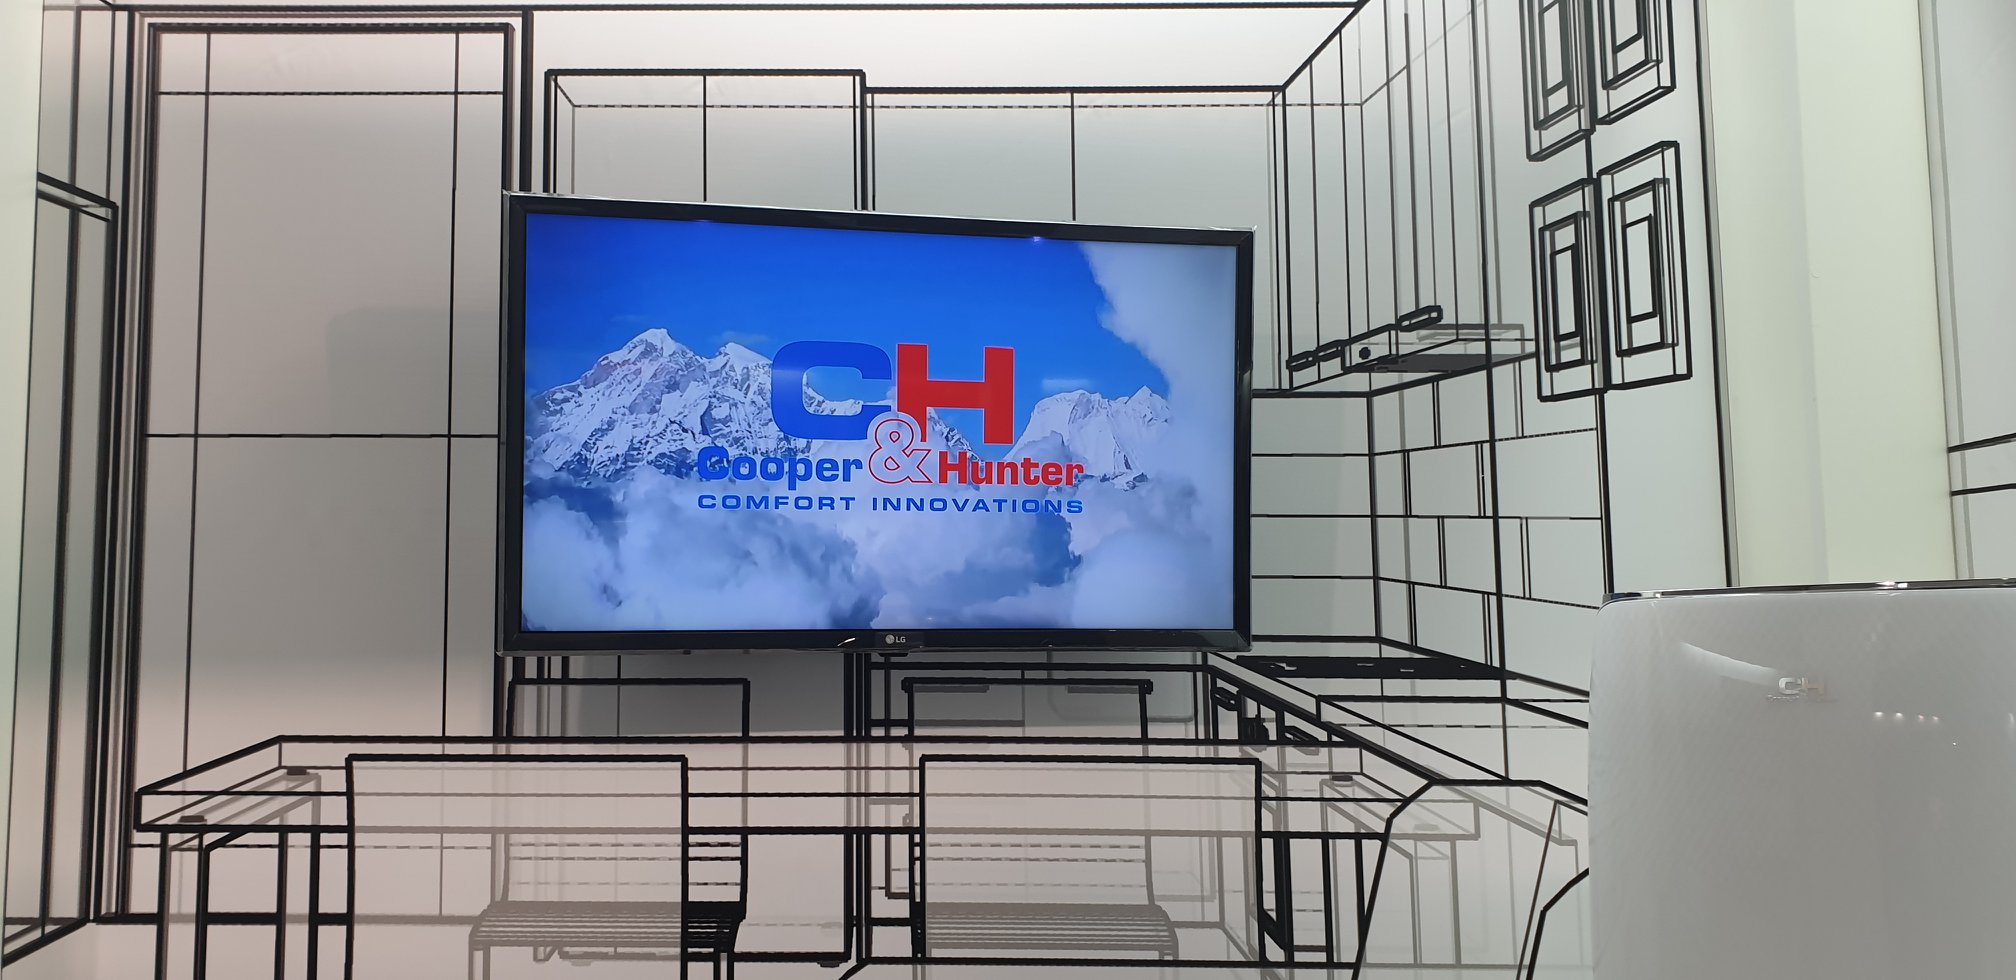 Cooper&Hunter взяв участь у виставці CEE 2019